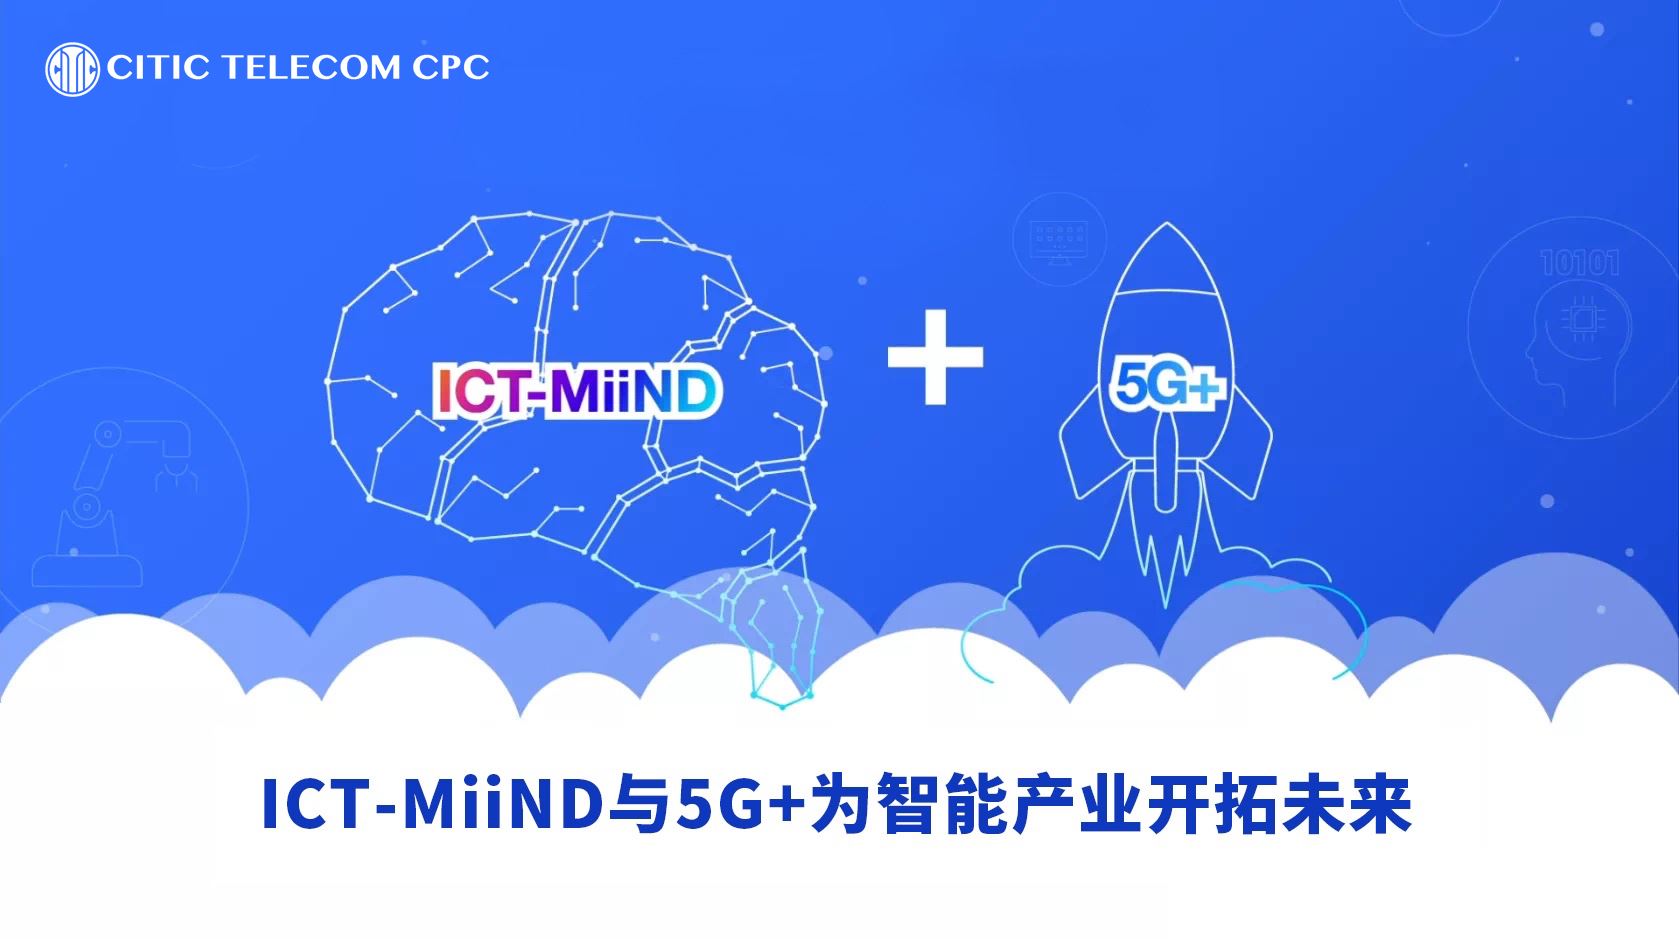 ICT-MiiND与5G + 为智能产业开拓未来